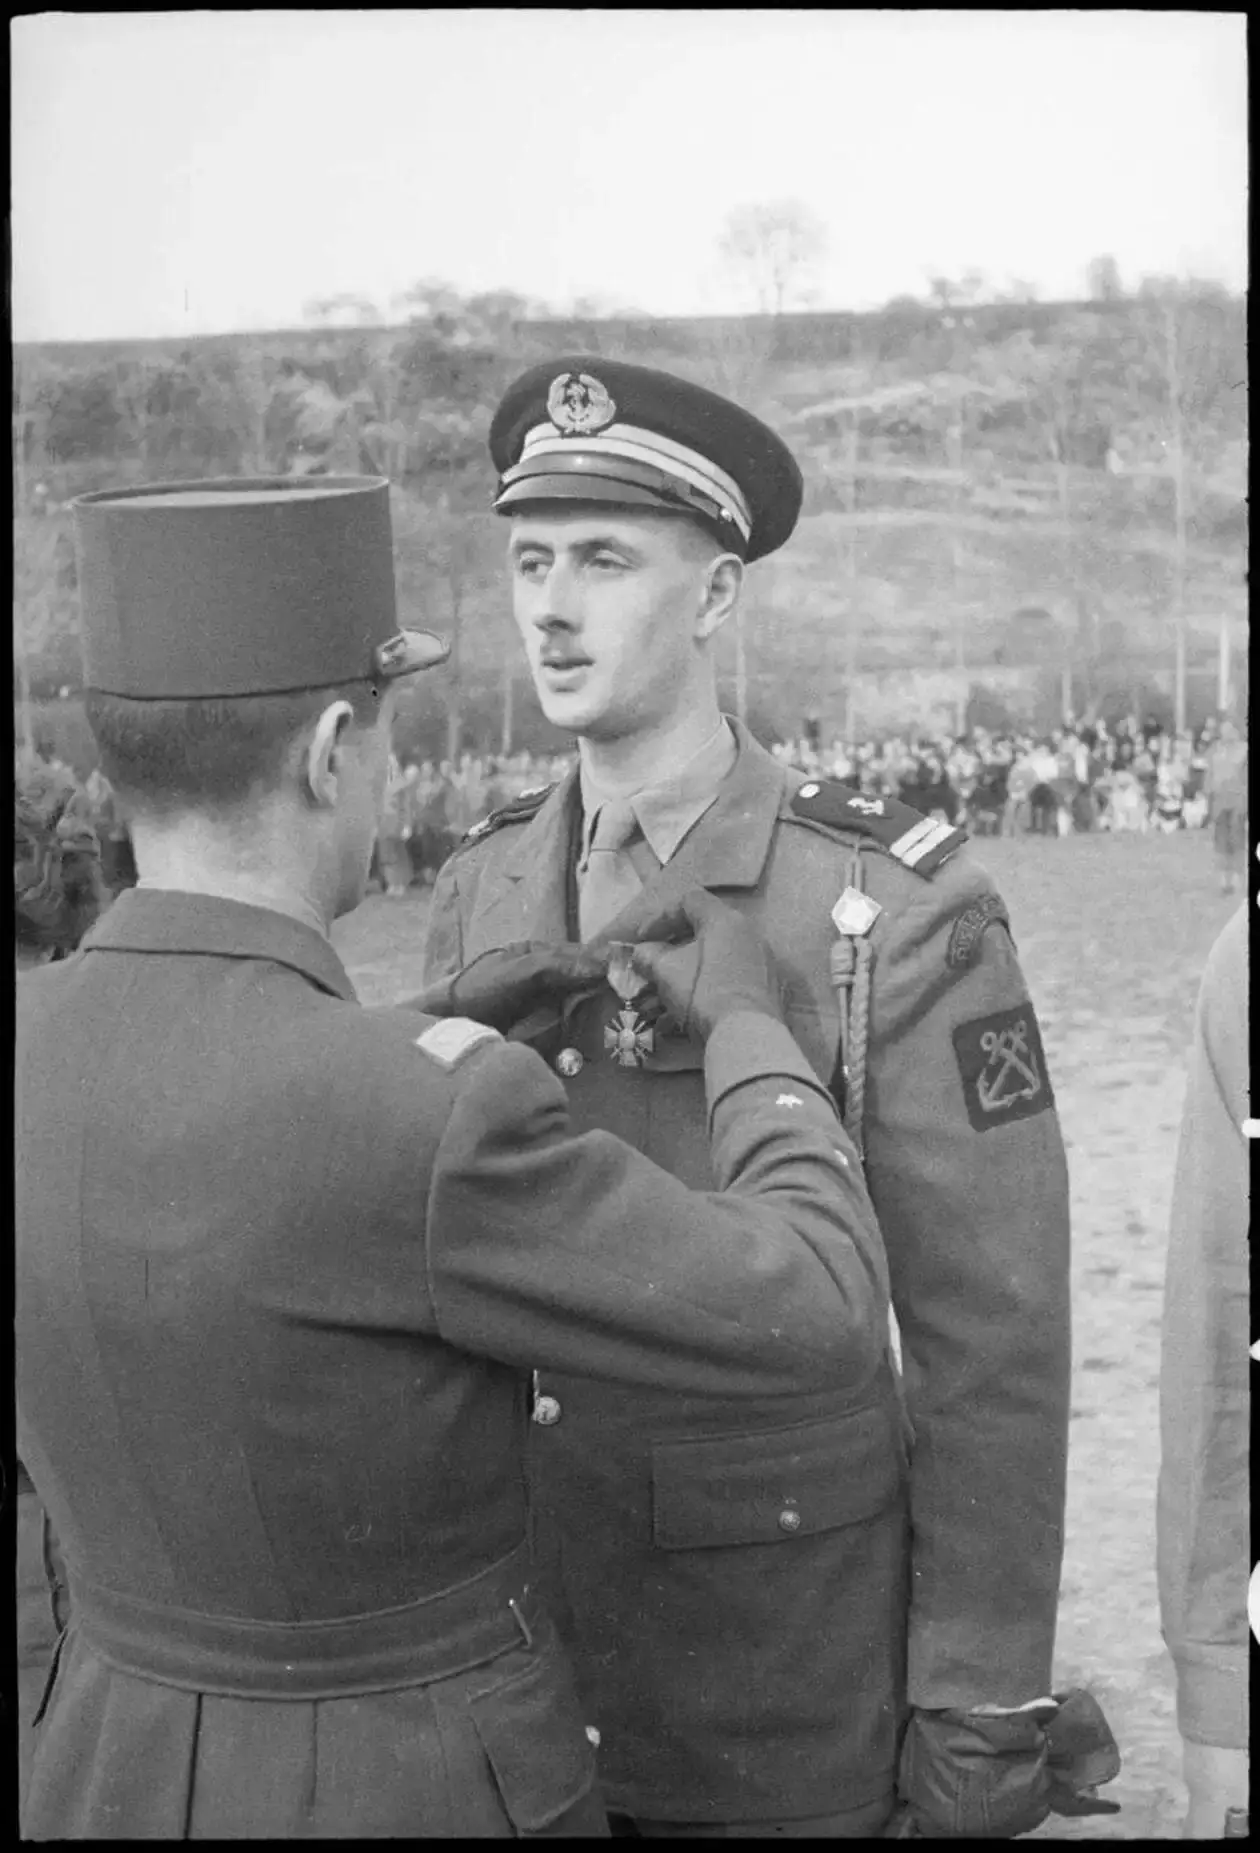 En avril 1945, pour sa contribution à la libération de la France, l'enseigne de vaisseau Philippe de Gaulle reçoit la Croix de guerre des mains du général Lelcerc_CEEM